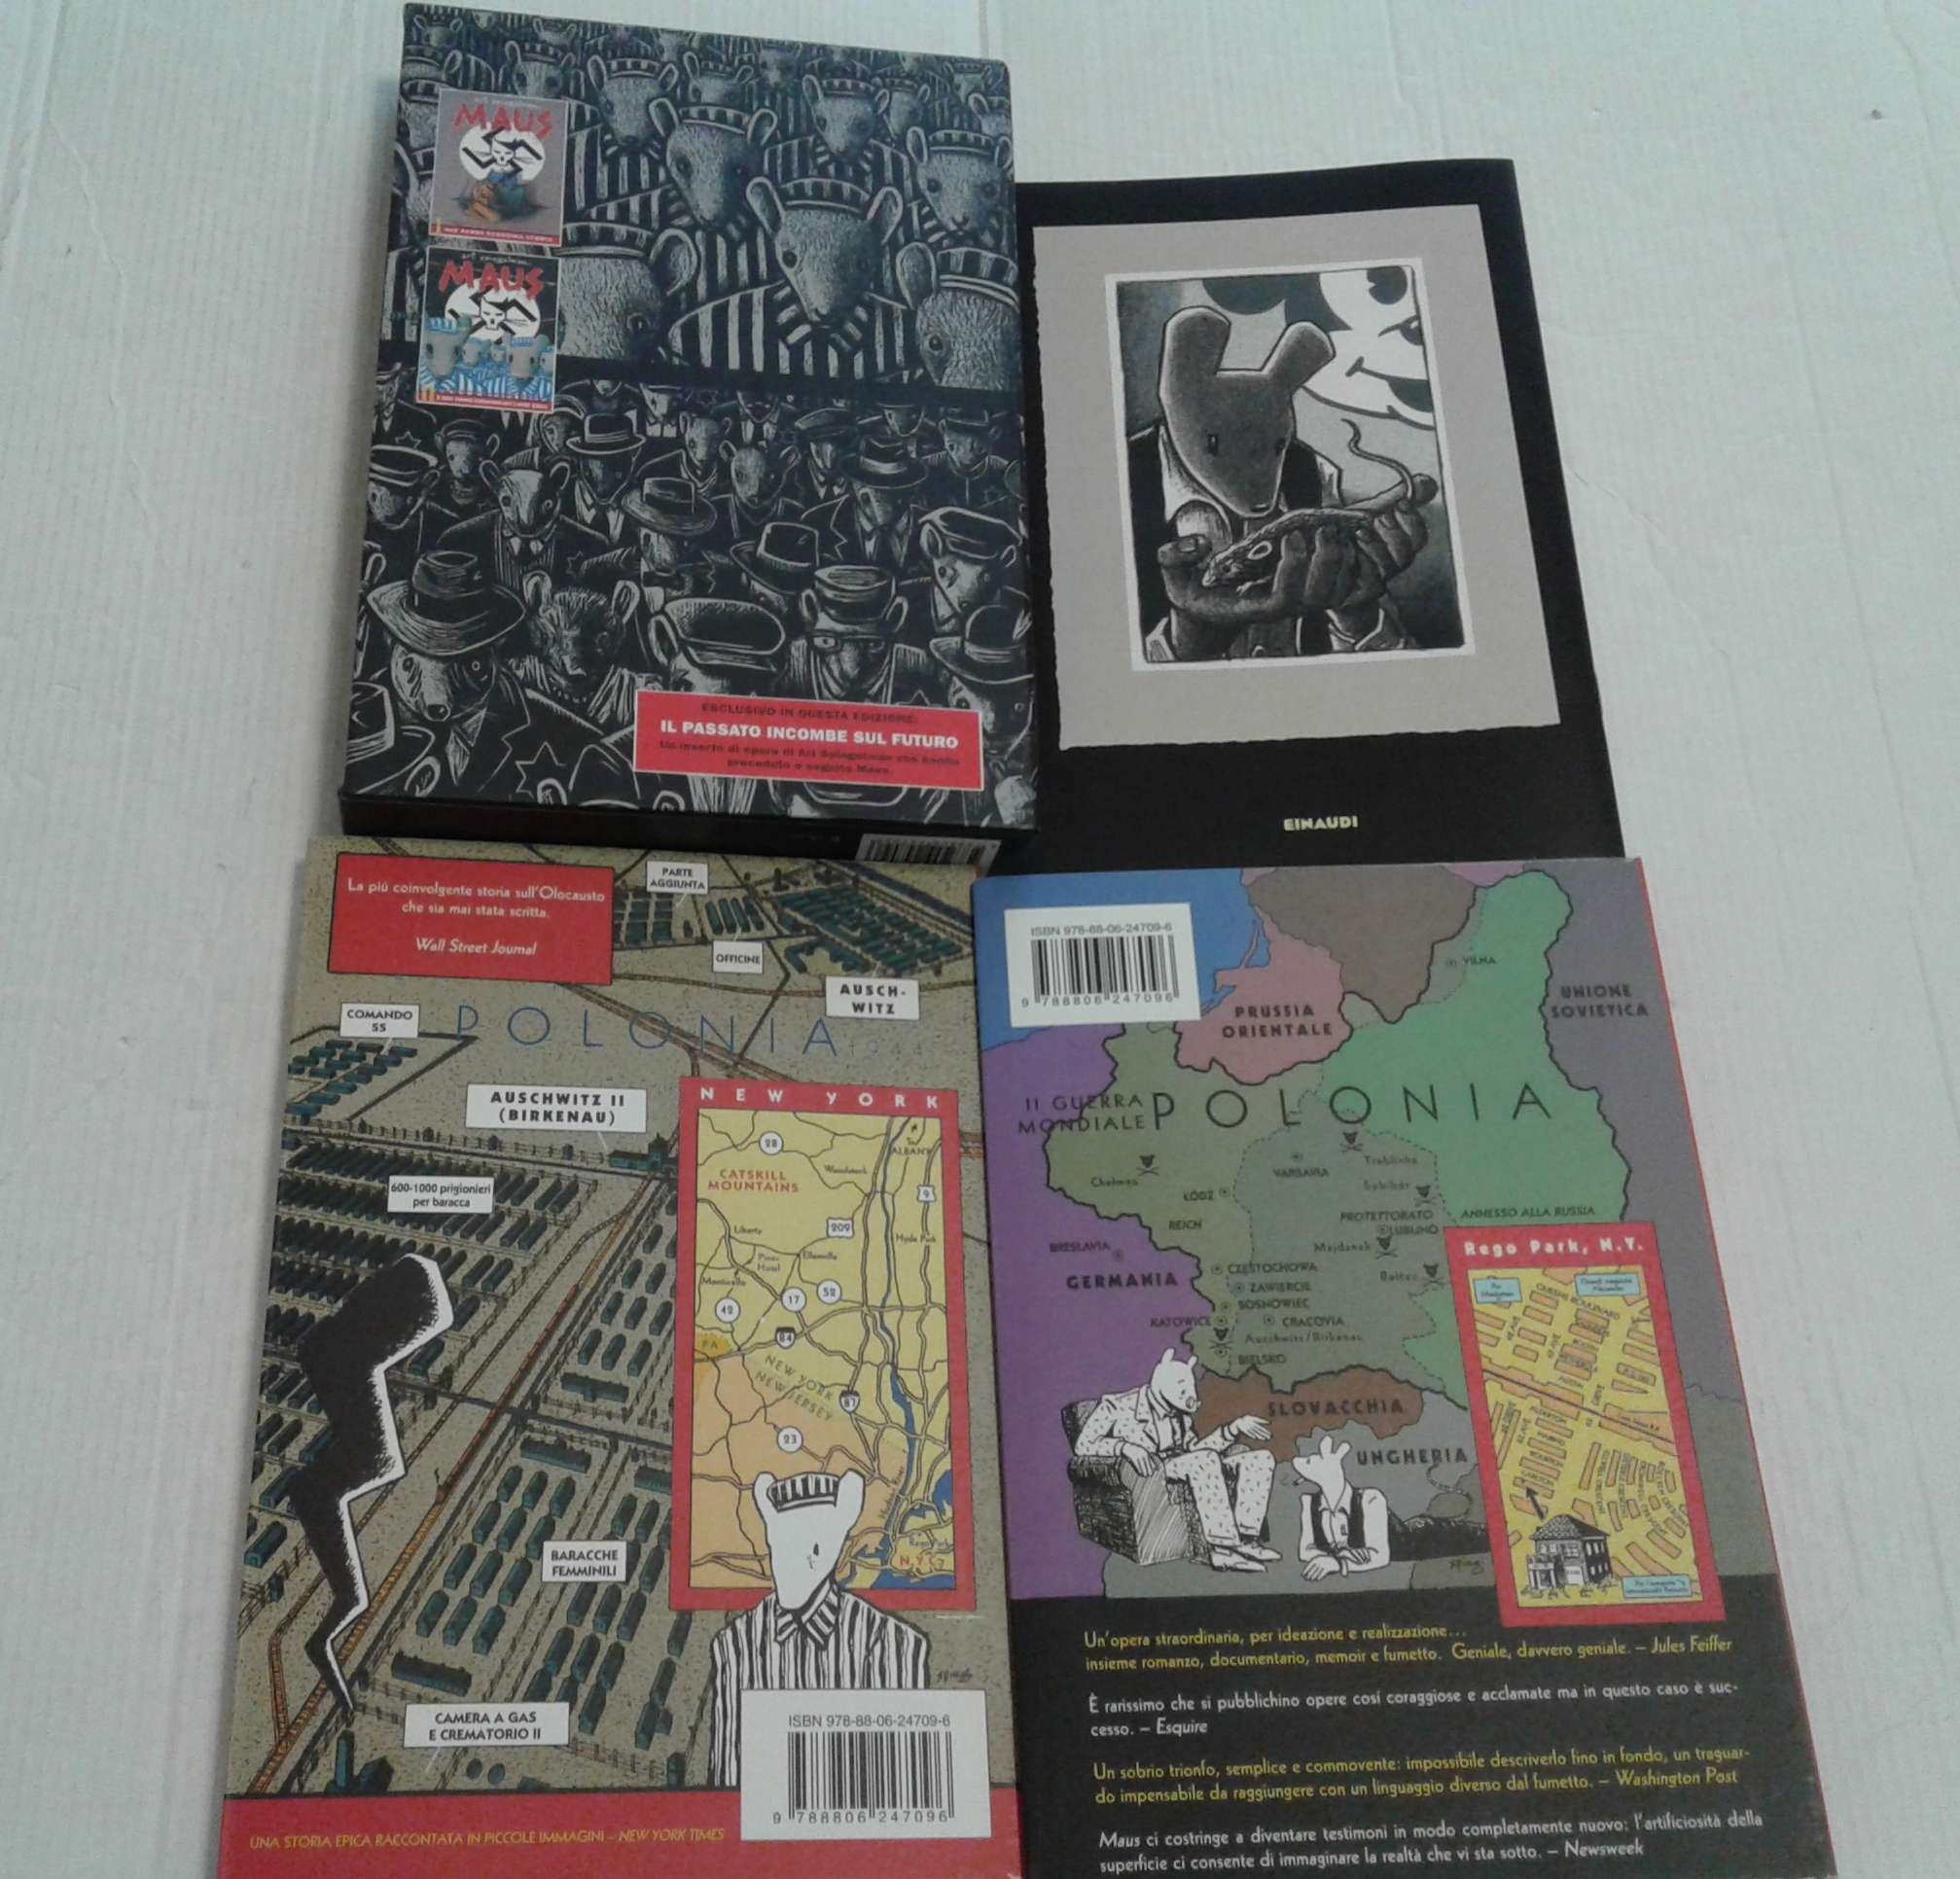 La nuova edizione di Maus di Art Spiegelman pubblicata da Einaudi -  Fumettologica